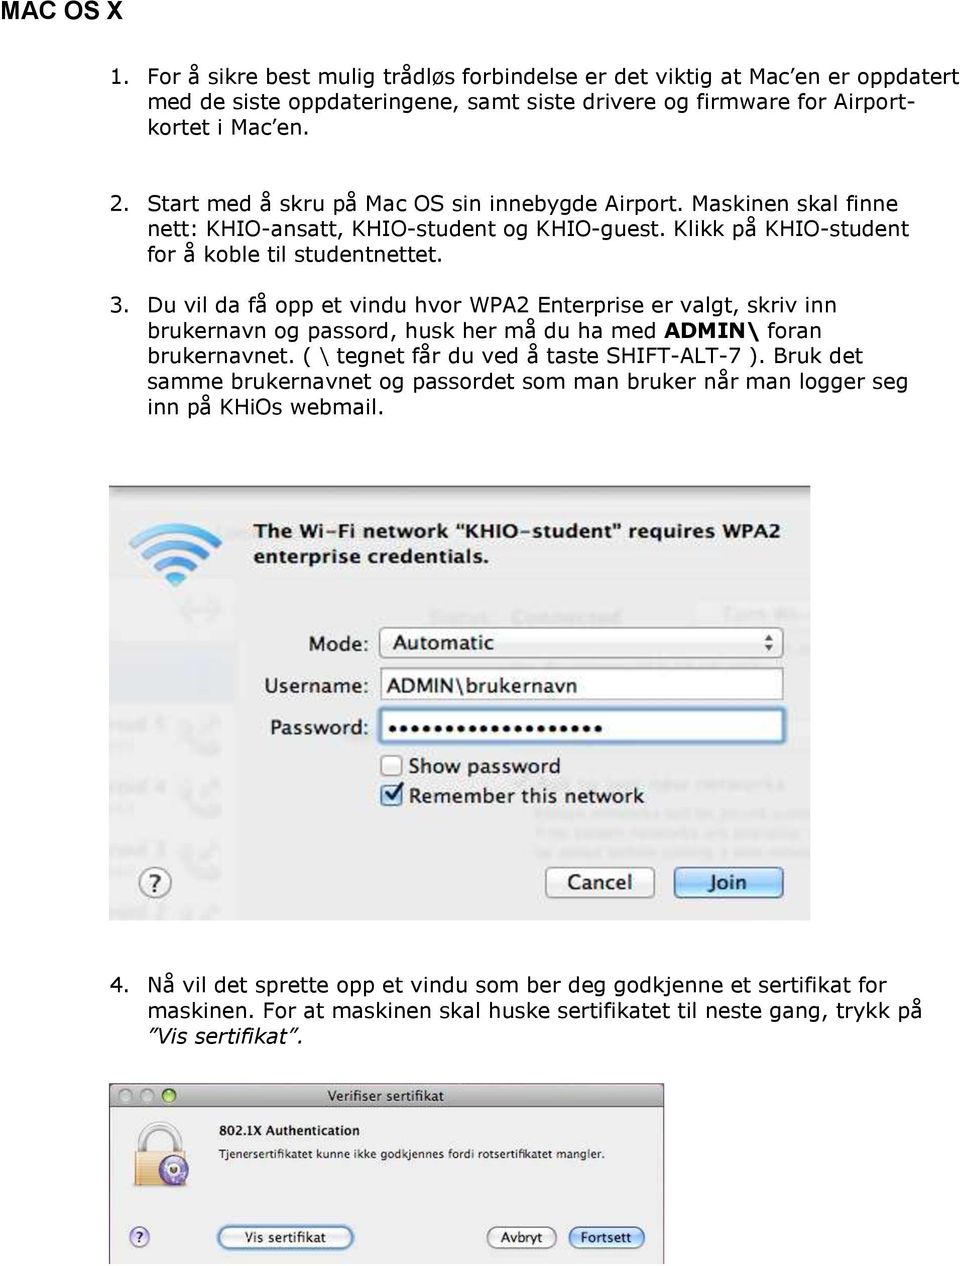 Du vil da få opp et vindu hvor WPA2 Enterprise er valgt, skriv inn brukernavn og passord, husk her må du ha med ADMIN\ foran brukernavnet. ( \ tegnet får du ved å taste SHIFT-ALT-7 ).